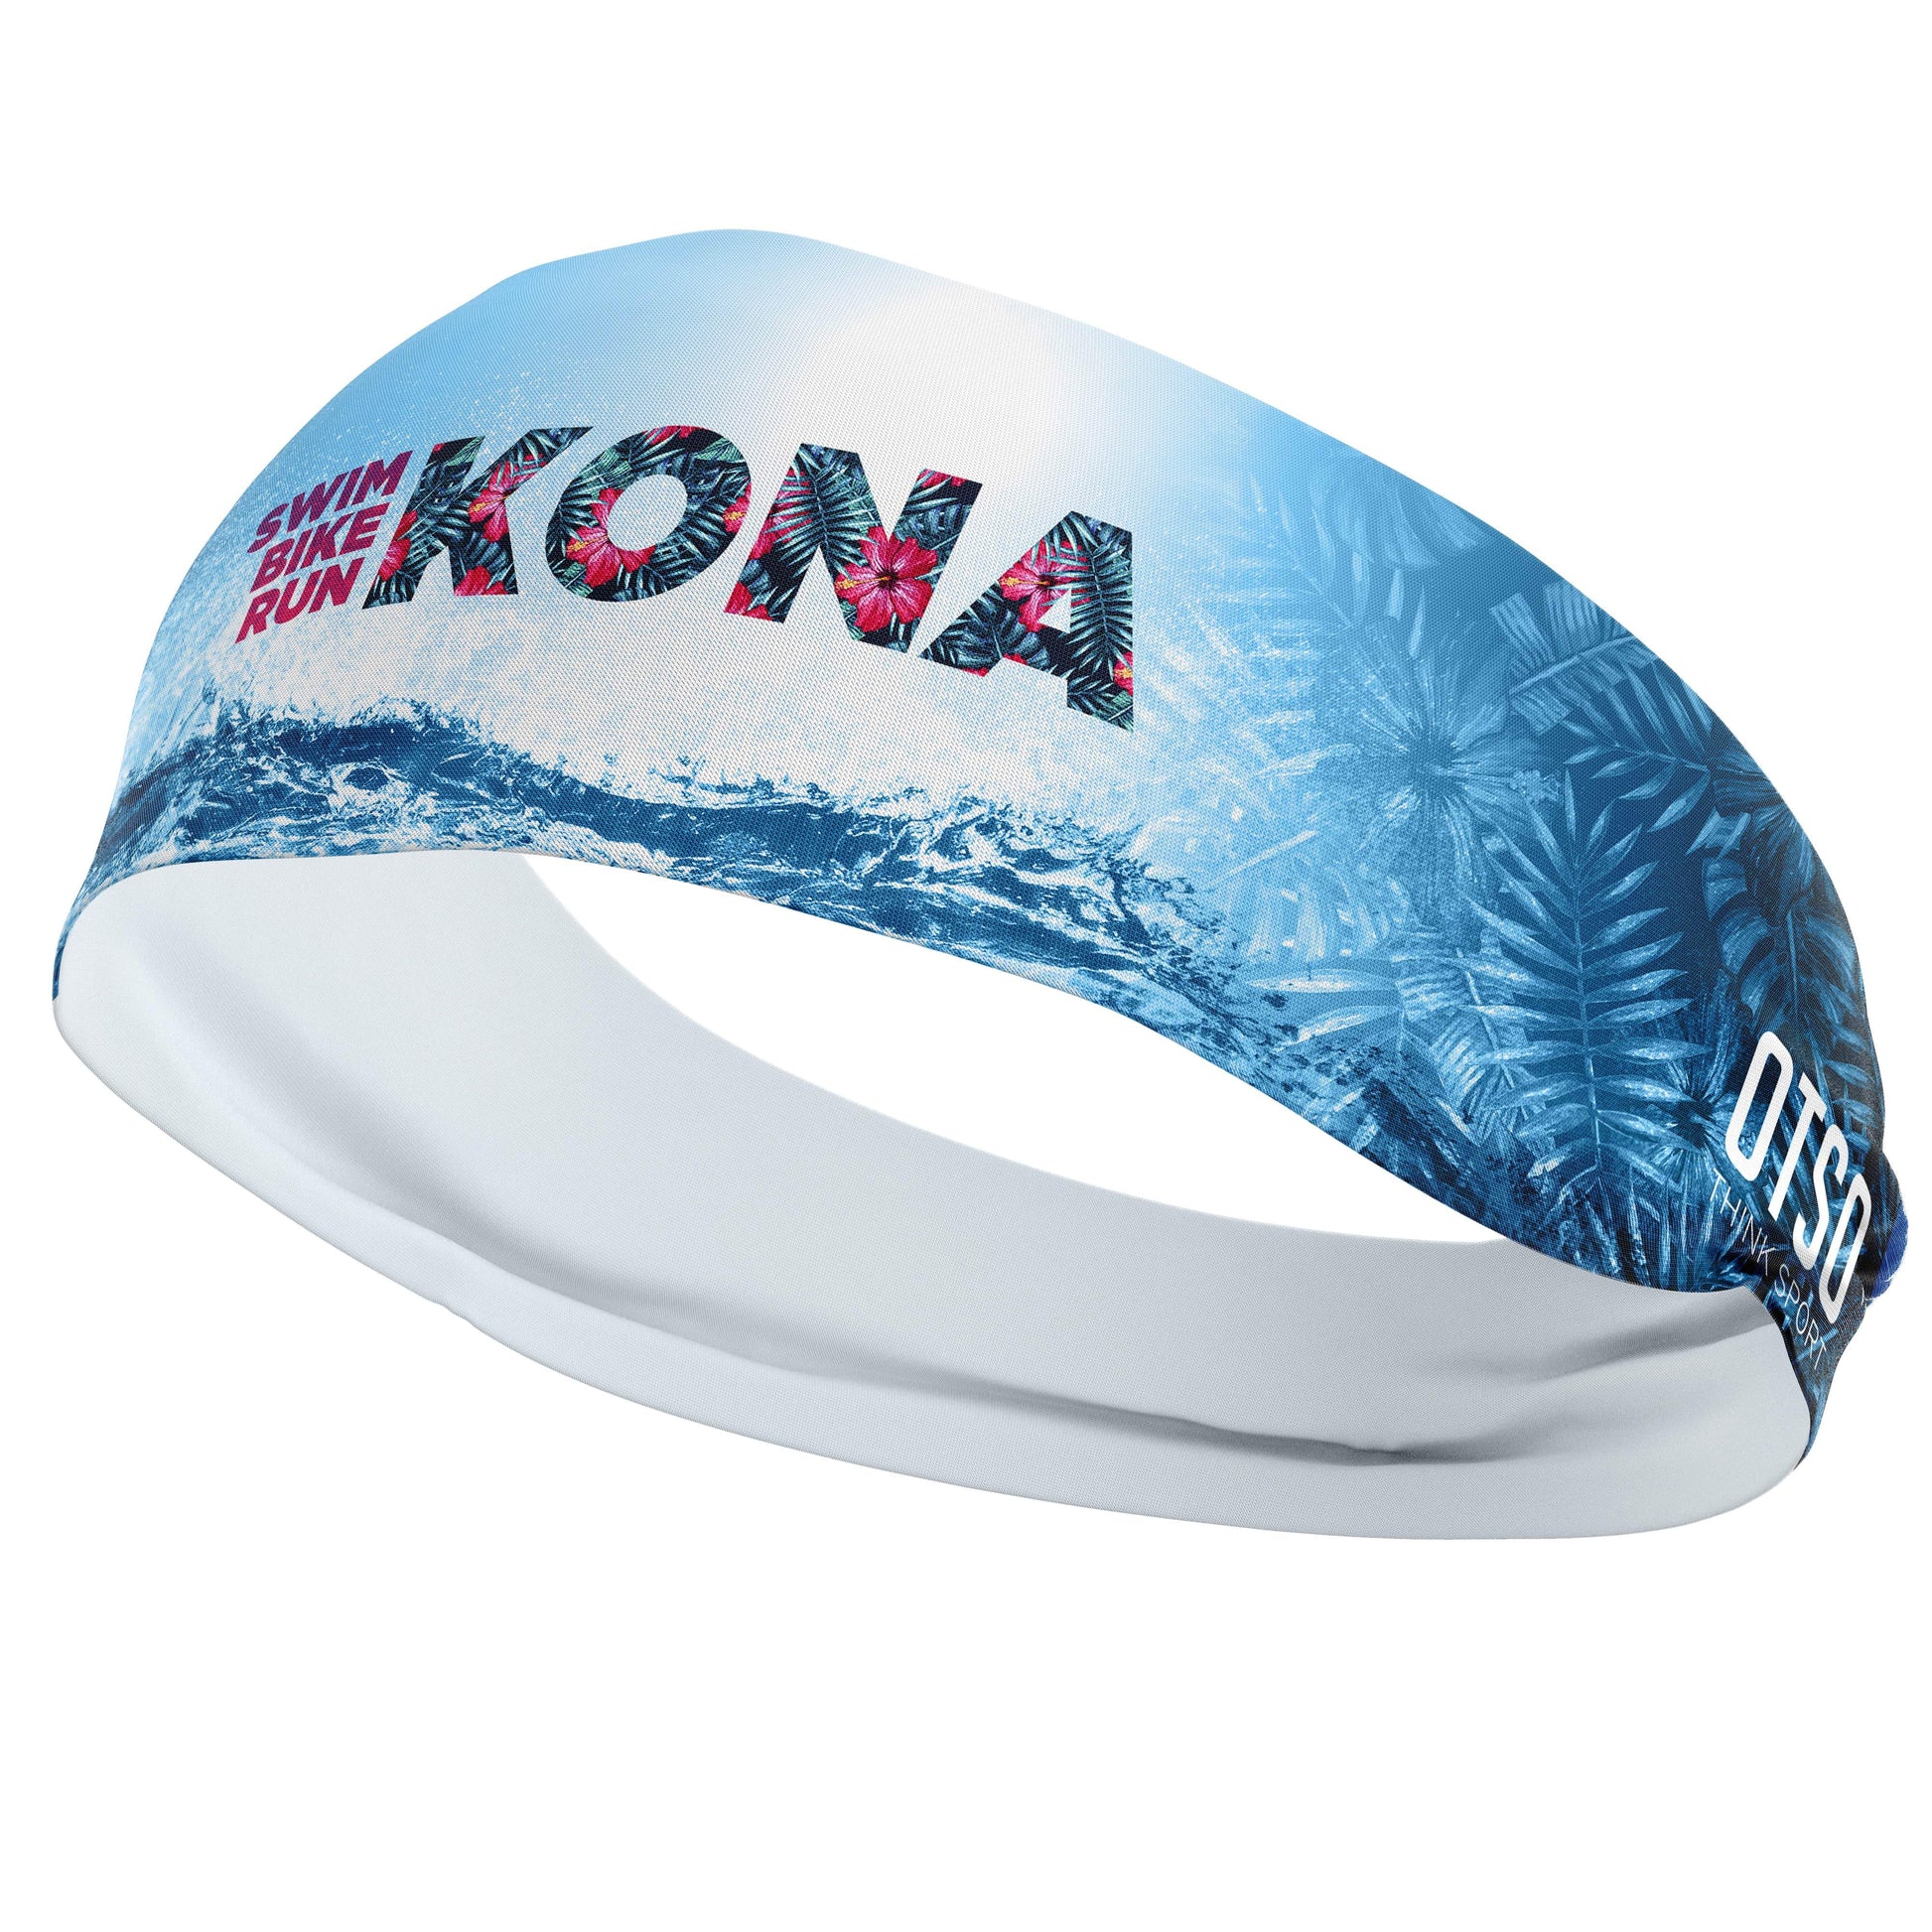 Headband Otso de 12cm de la edición 2019 de Kona. El producto es unisex y de talla única